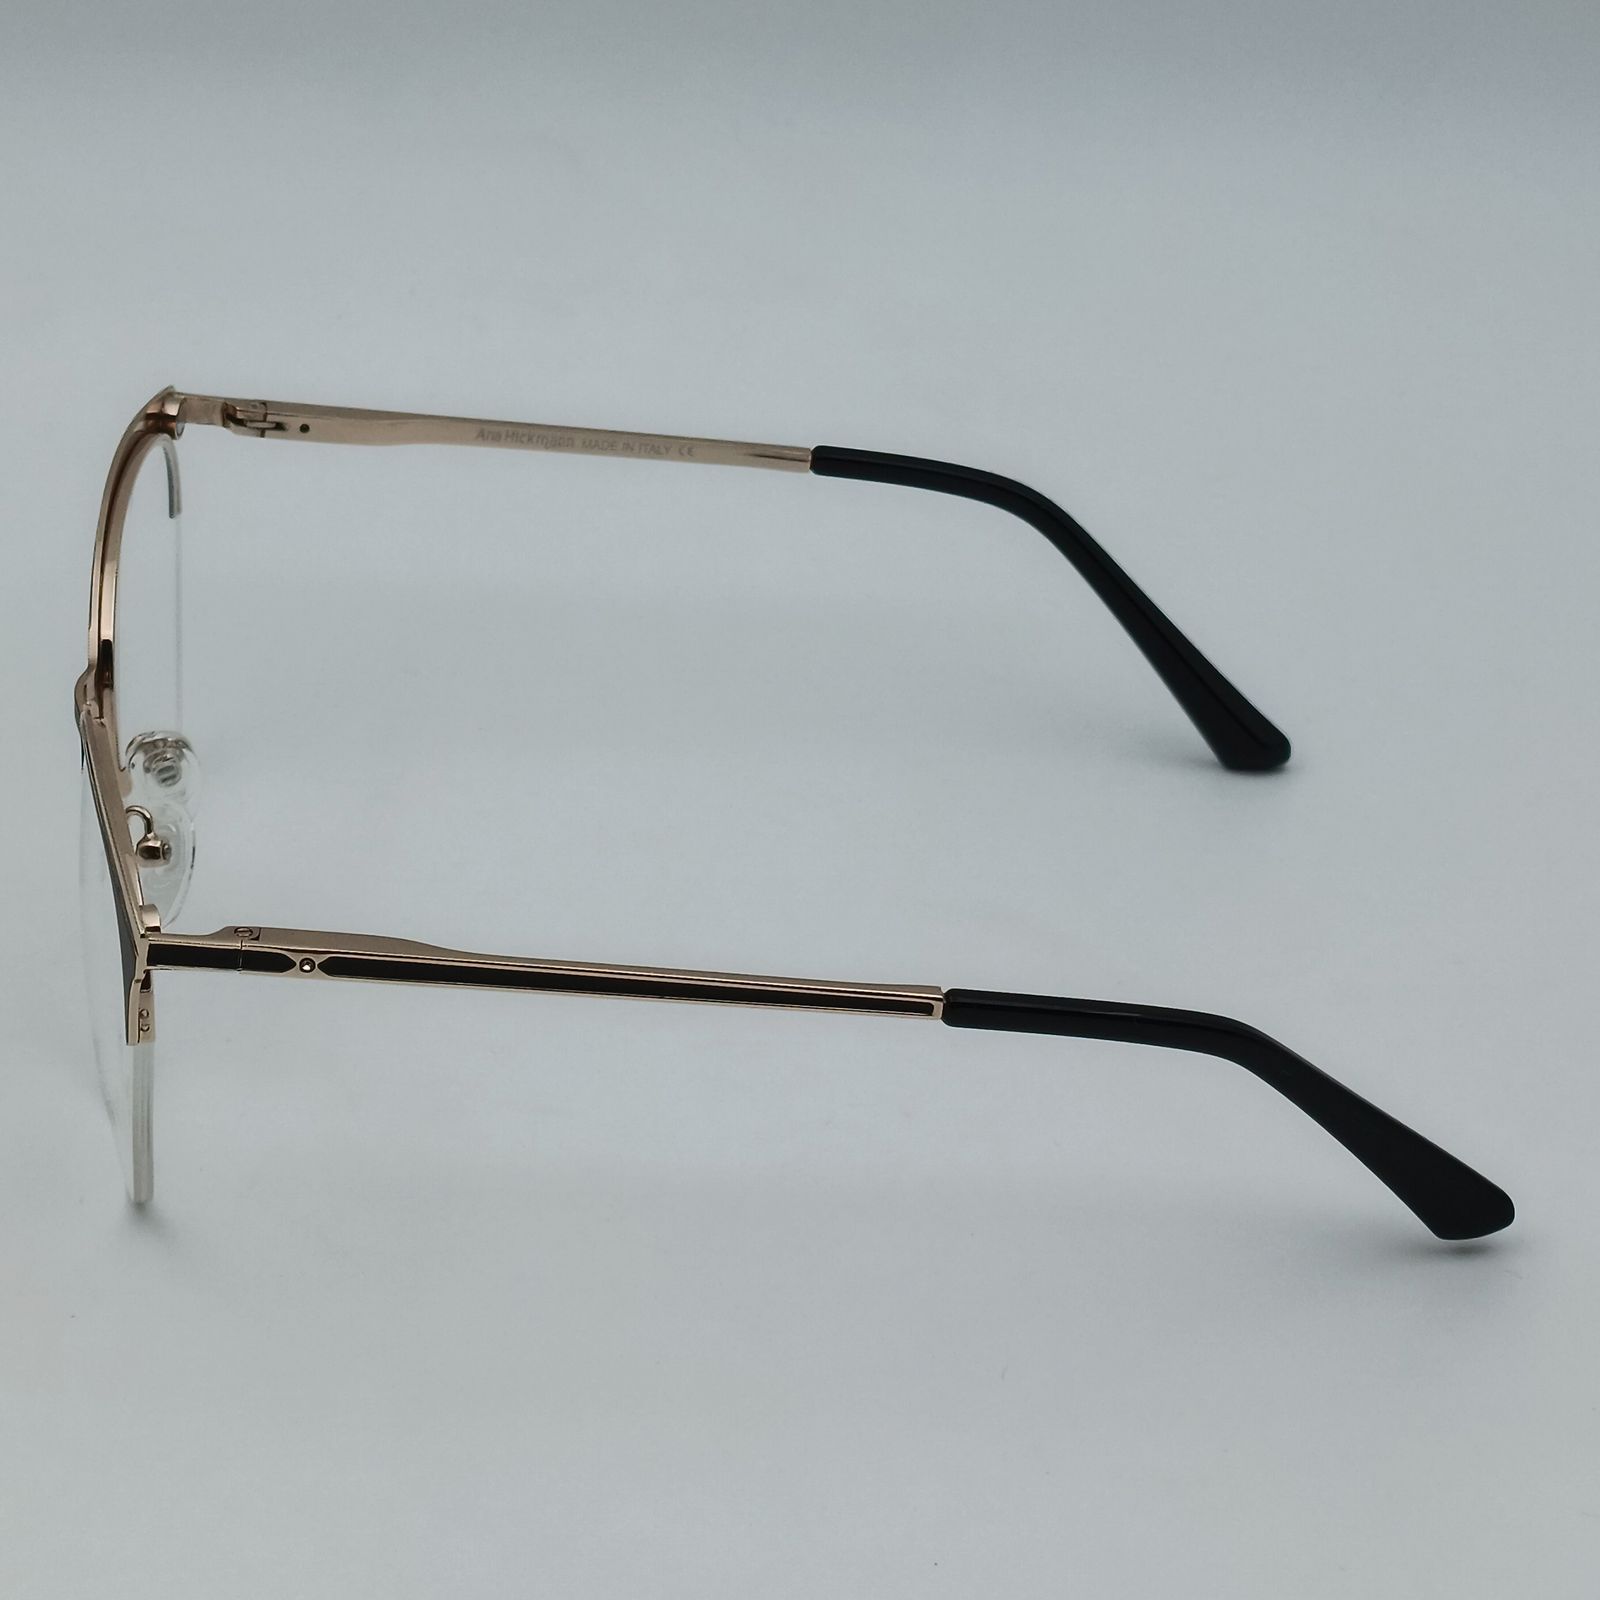 فریم عینک طبی زنانه آناهیکمن مدل FNA003 C1 به همراه کاور آفتابی -  - 5